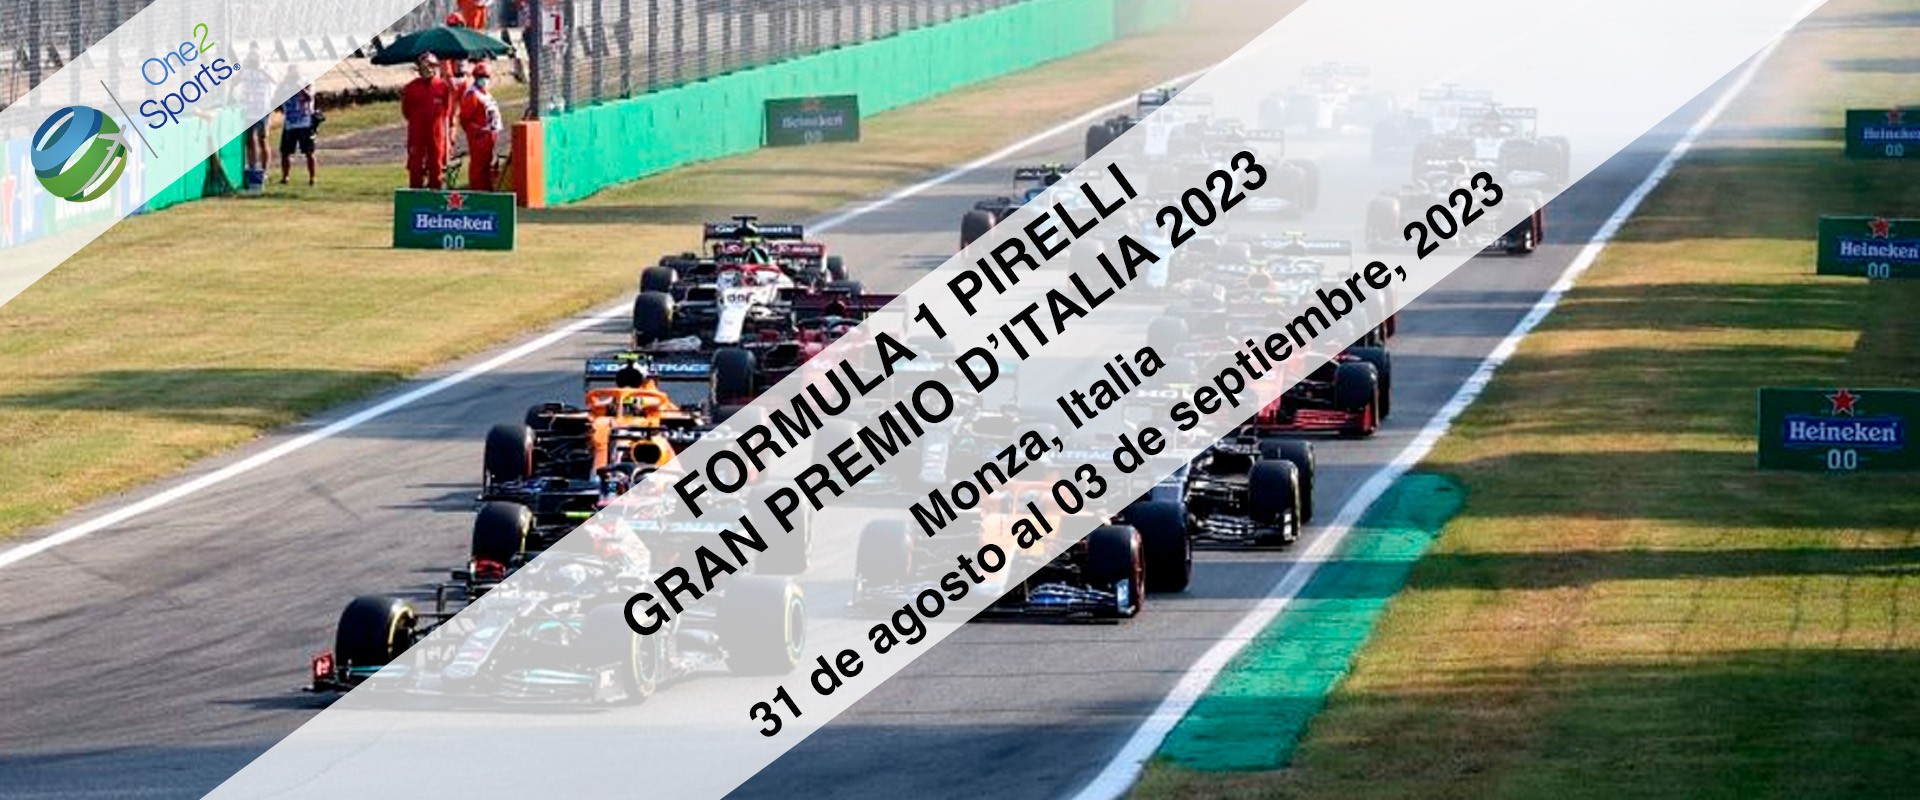 F1 Gran Premio Monza